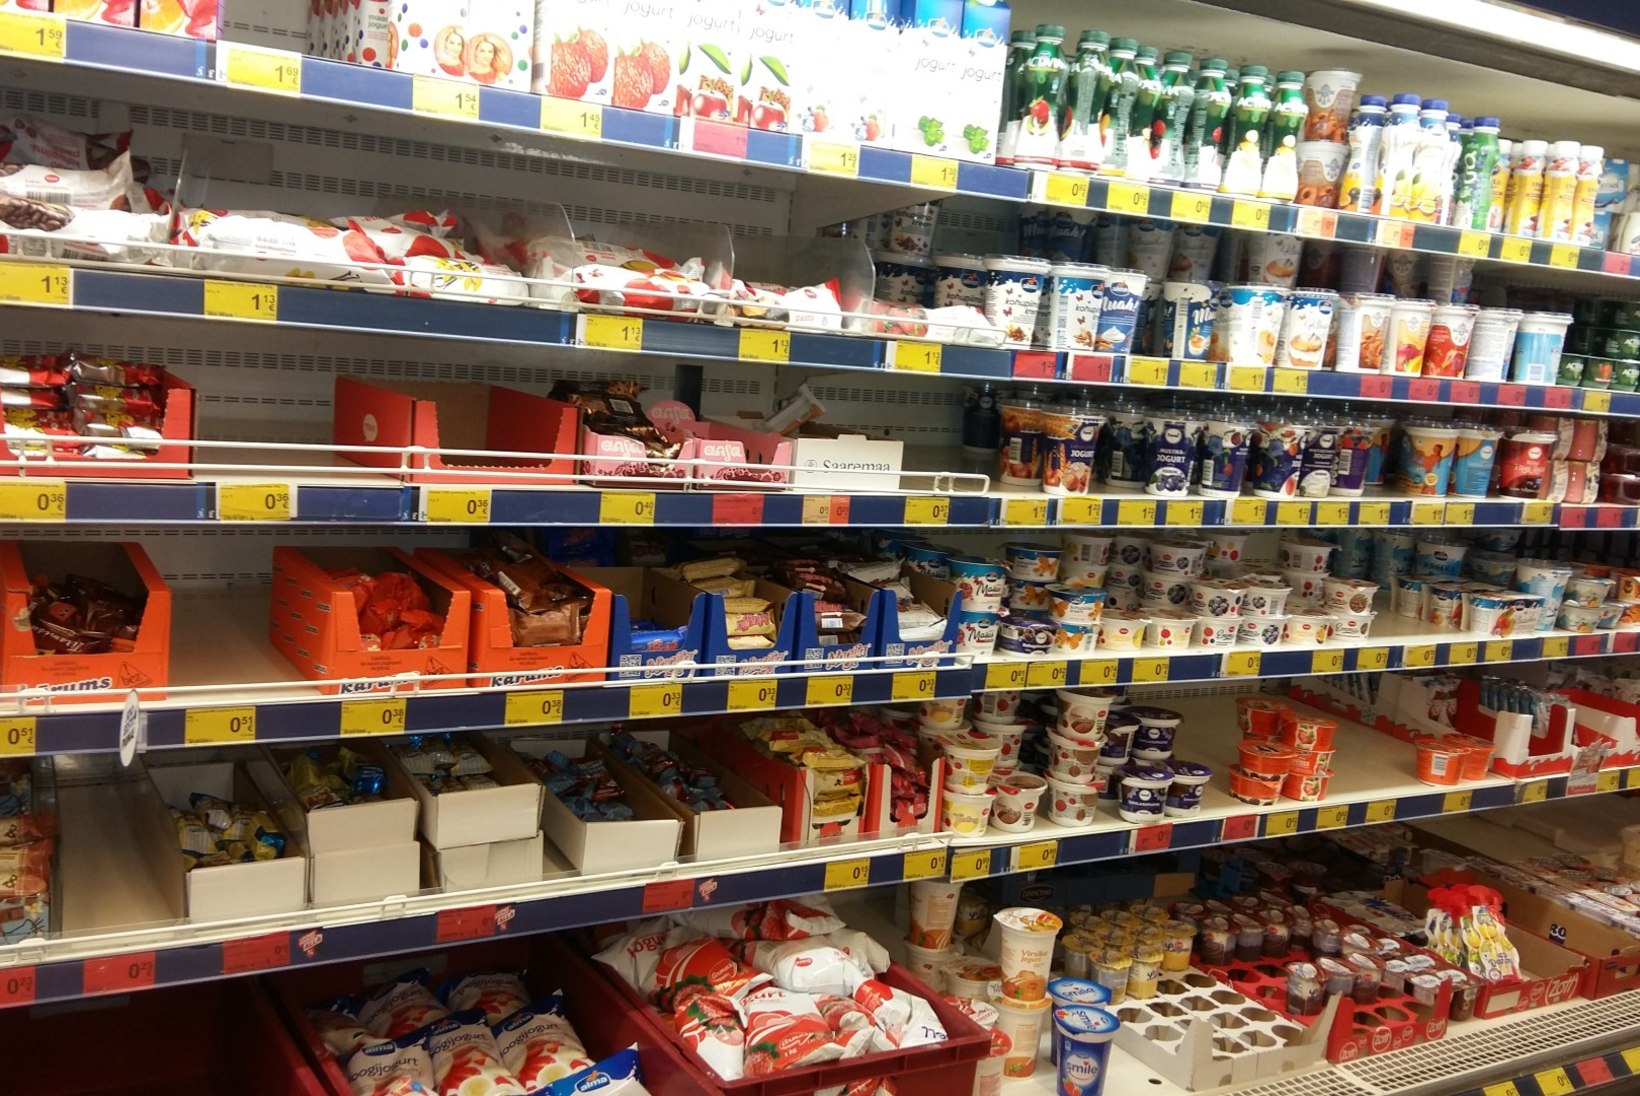 LUGEJA FOTOD | Mis toimub, kas piimakriis on käes? Logistikakeskuse kõrval elajad ei saanud Maxima poest piima